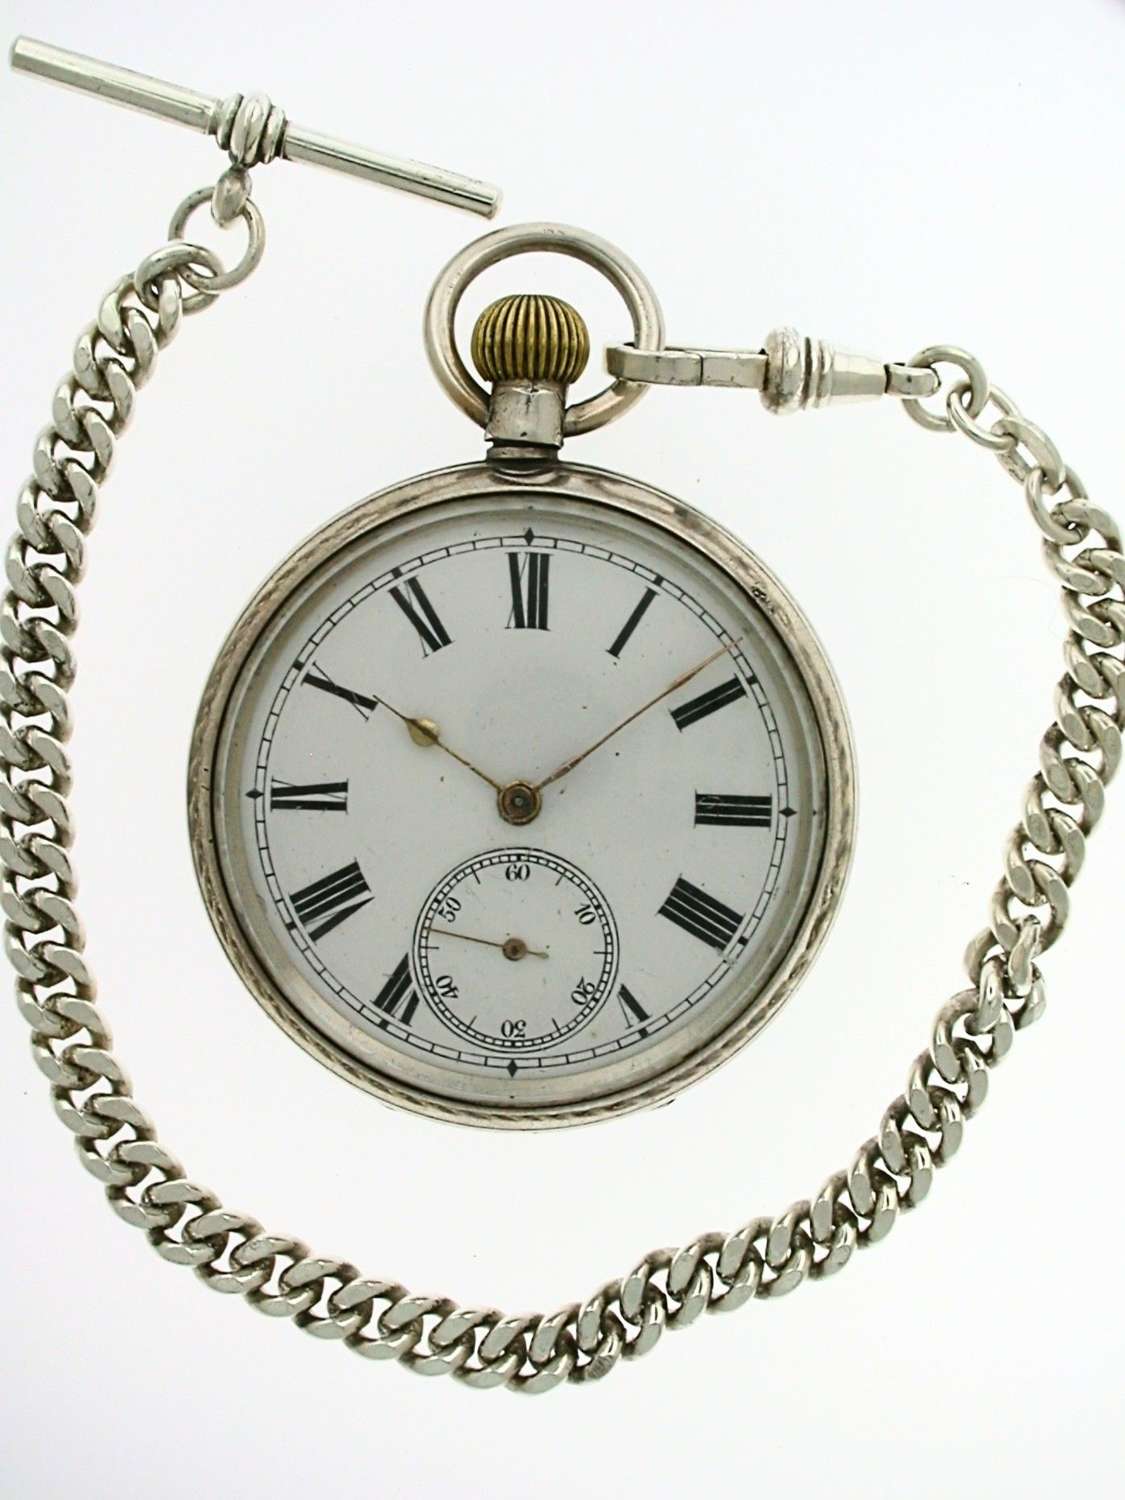 MOERIS Silver 925 Open Face Pocket Watch  Hallmarked for London 1928